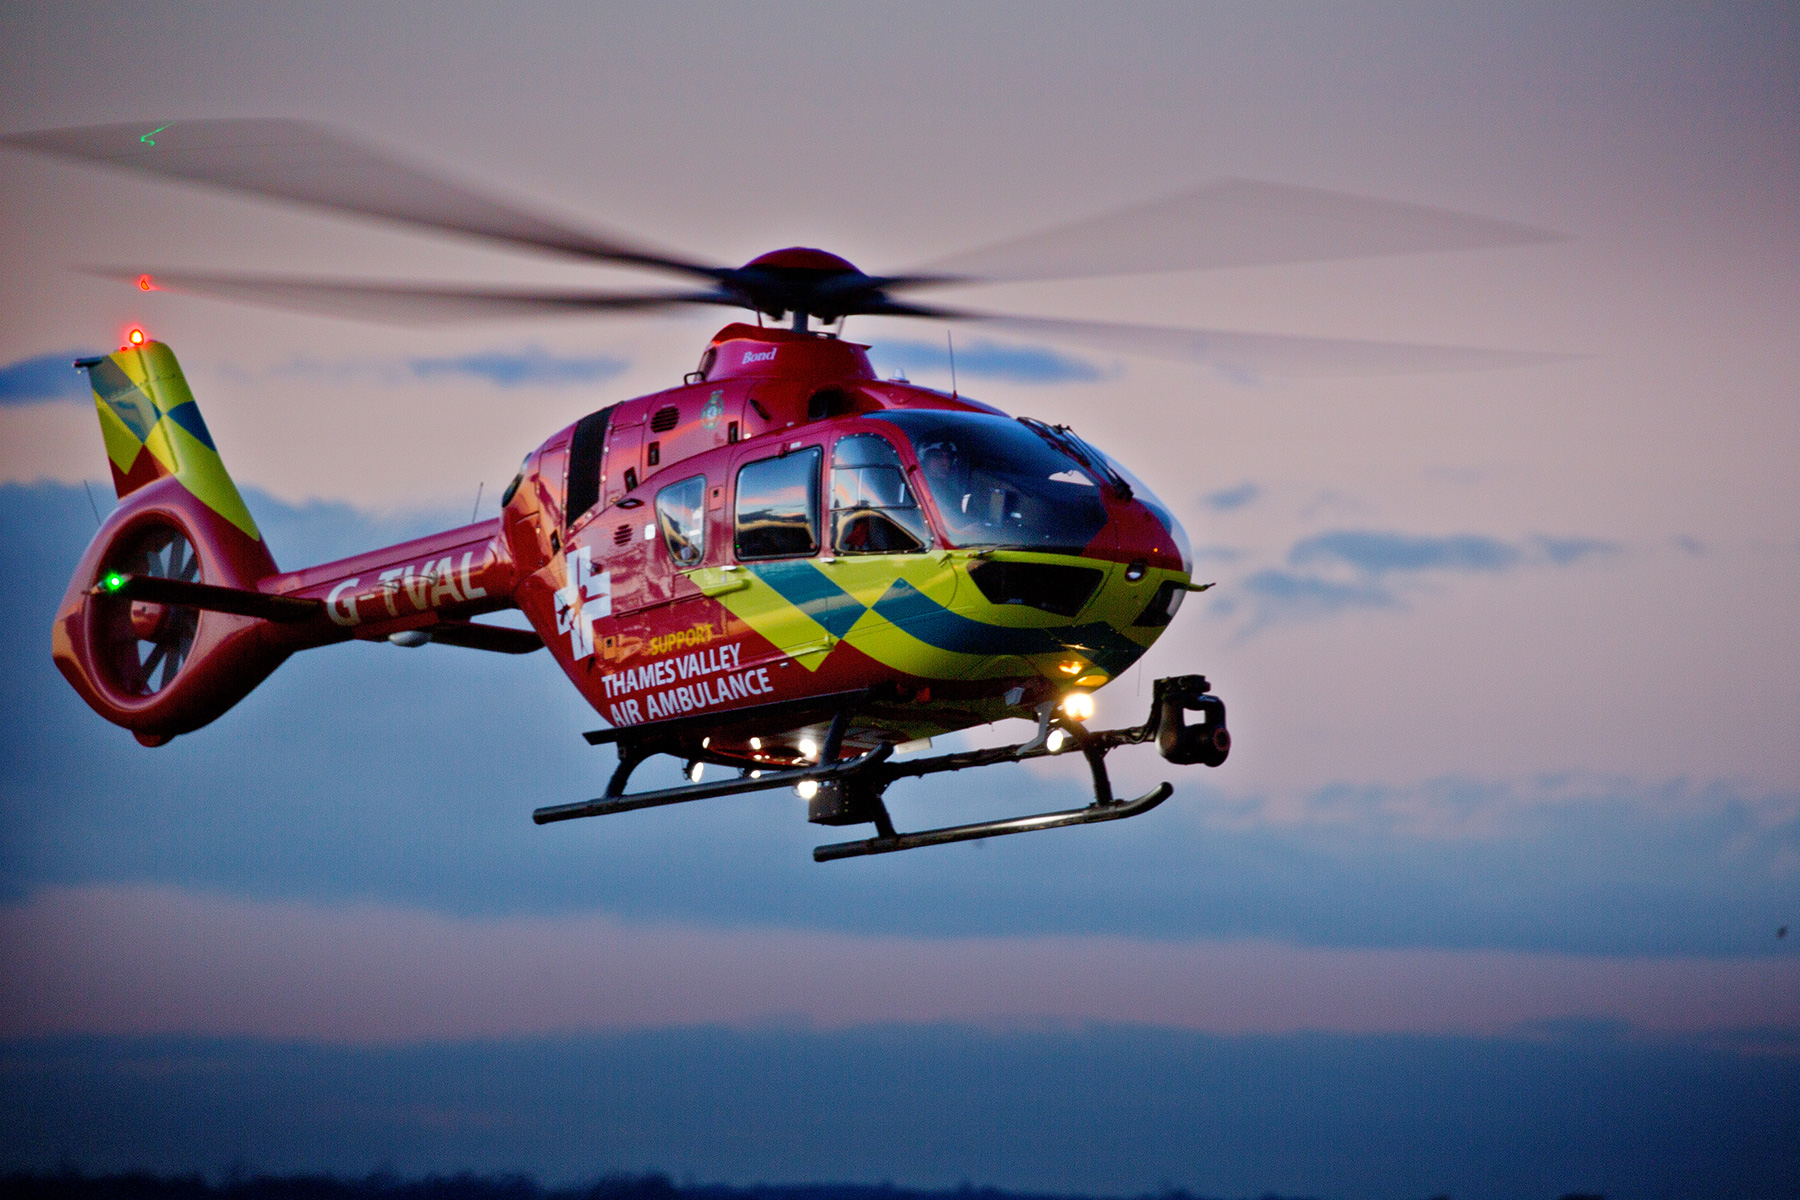 Thames Valley Air Ambulance flying at dusk